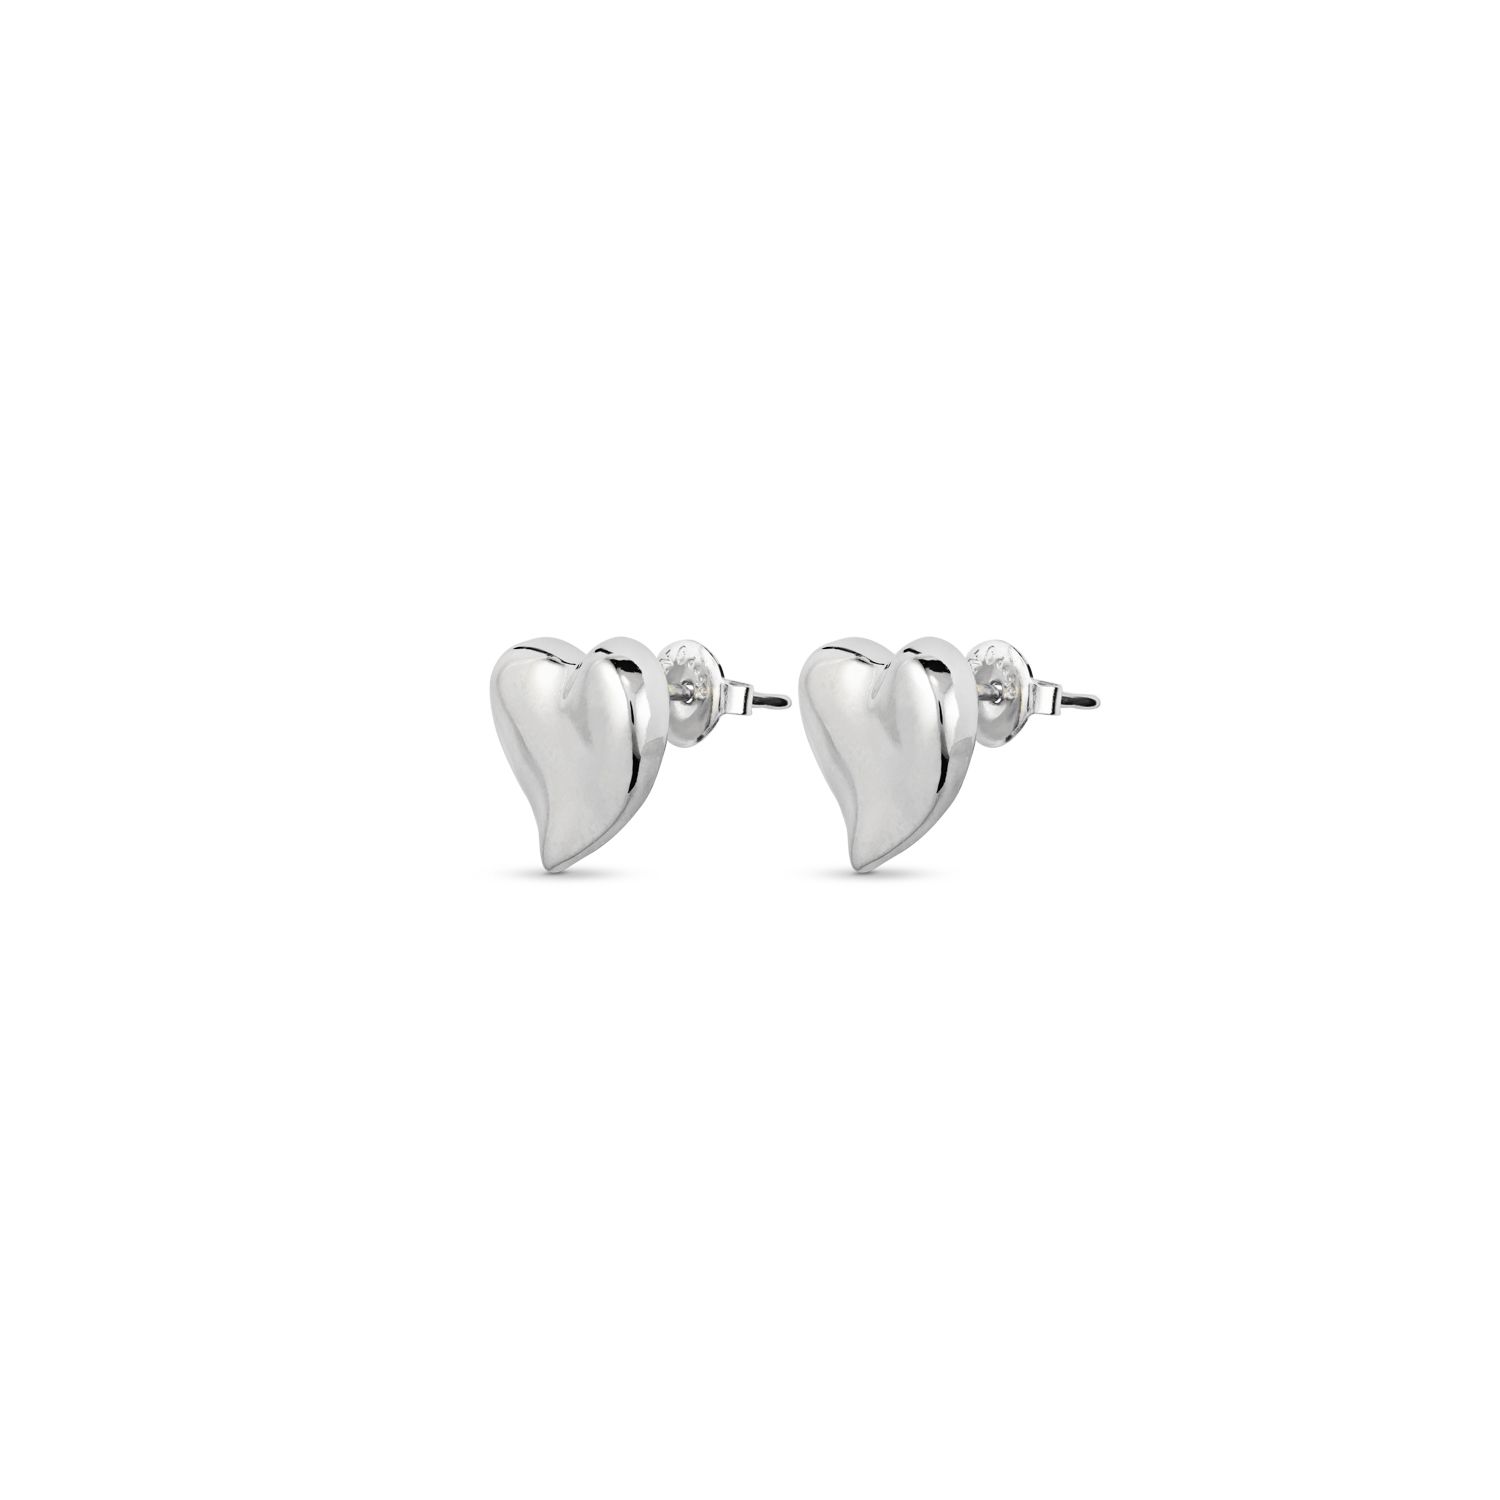 Uno de 50 Heart Earrings - Silver